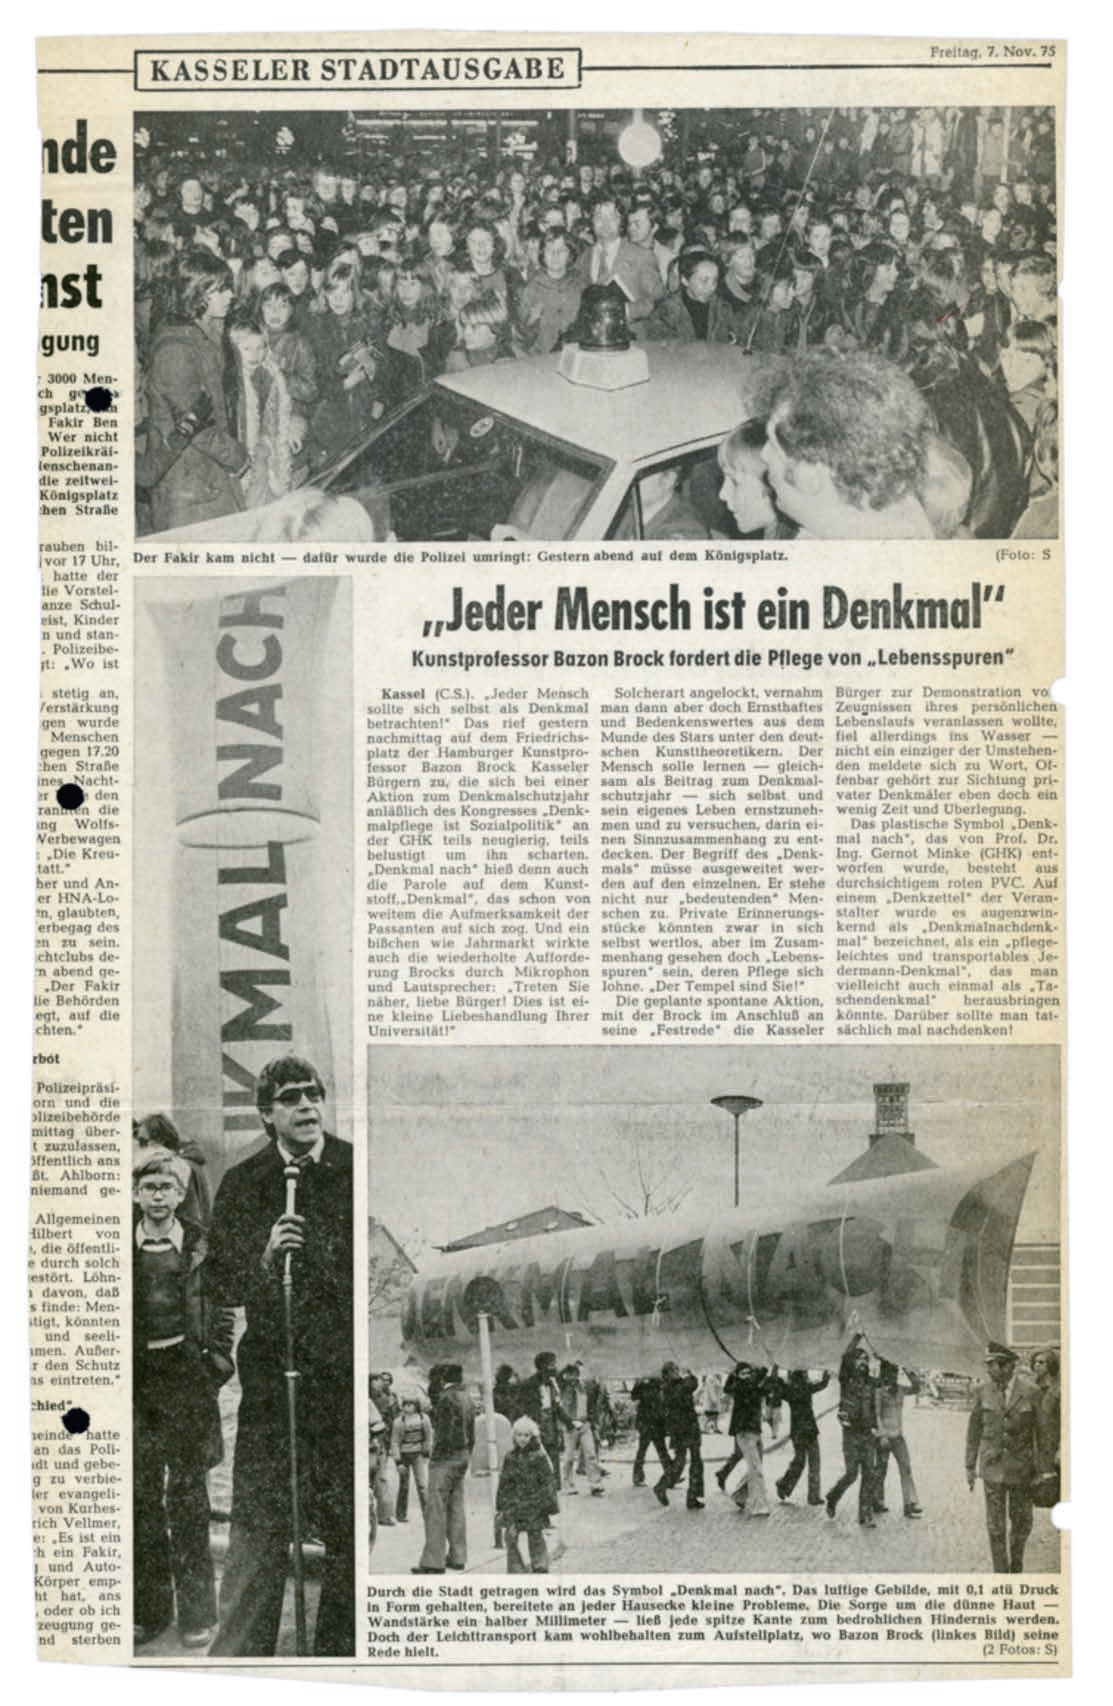 Jeder Mensch ist ein Denkmal. Kasseler Stadtausgabe, 7.11.1975